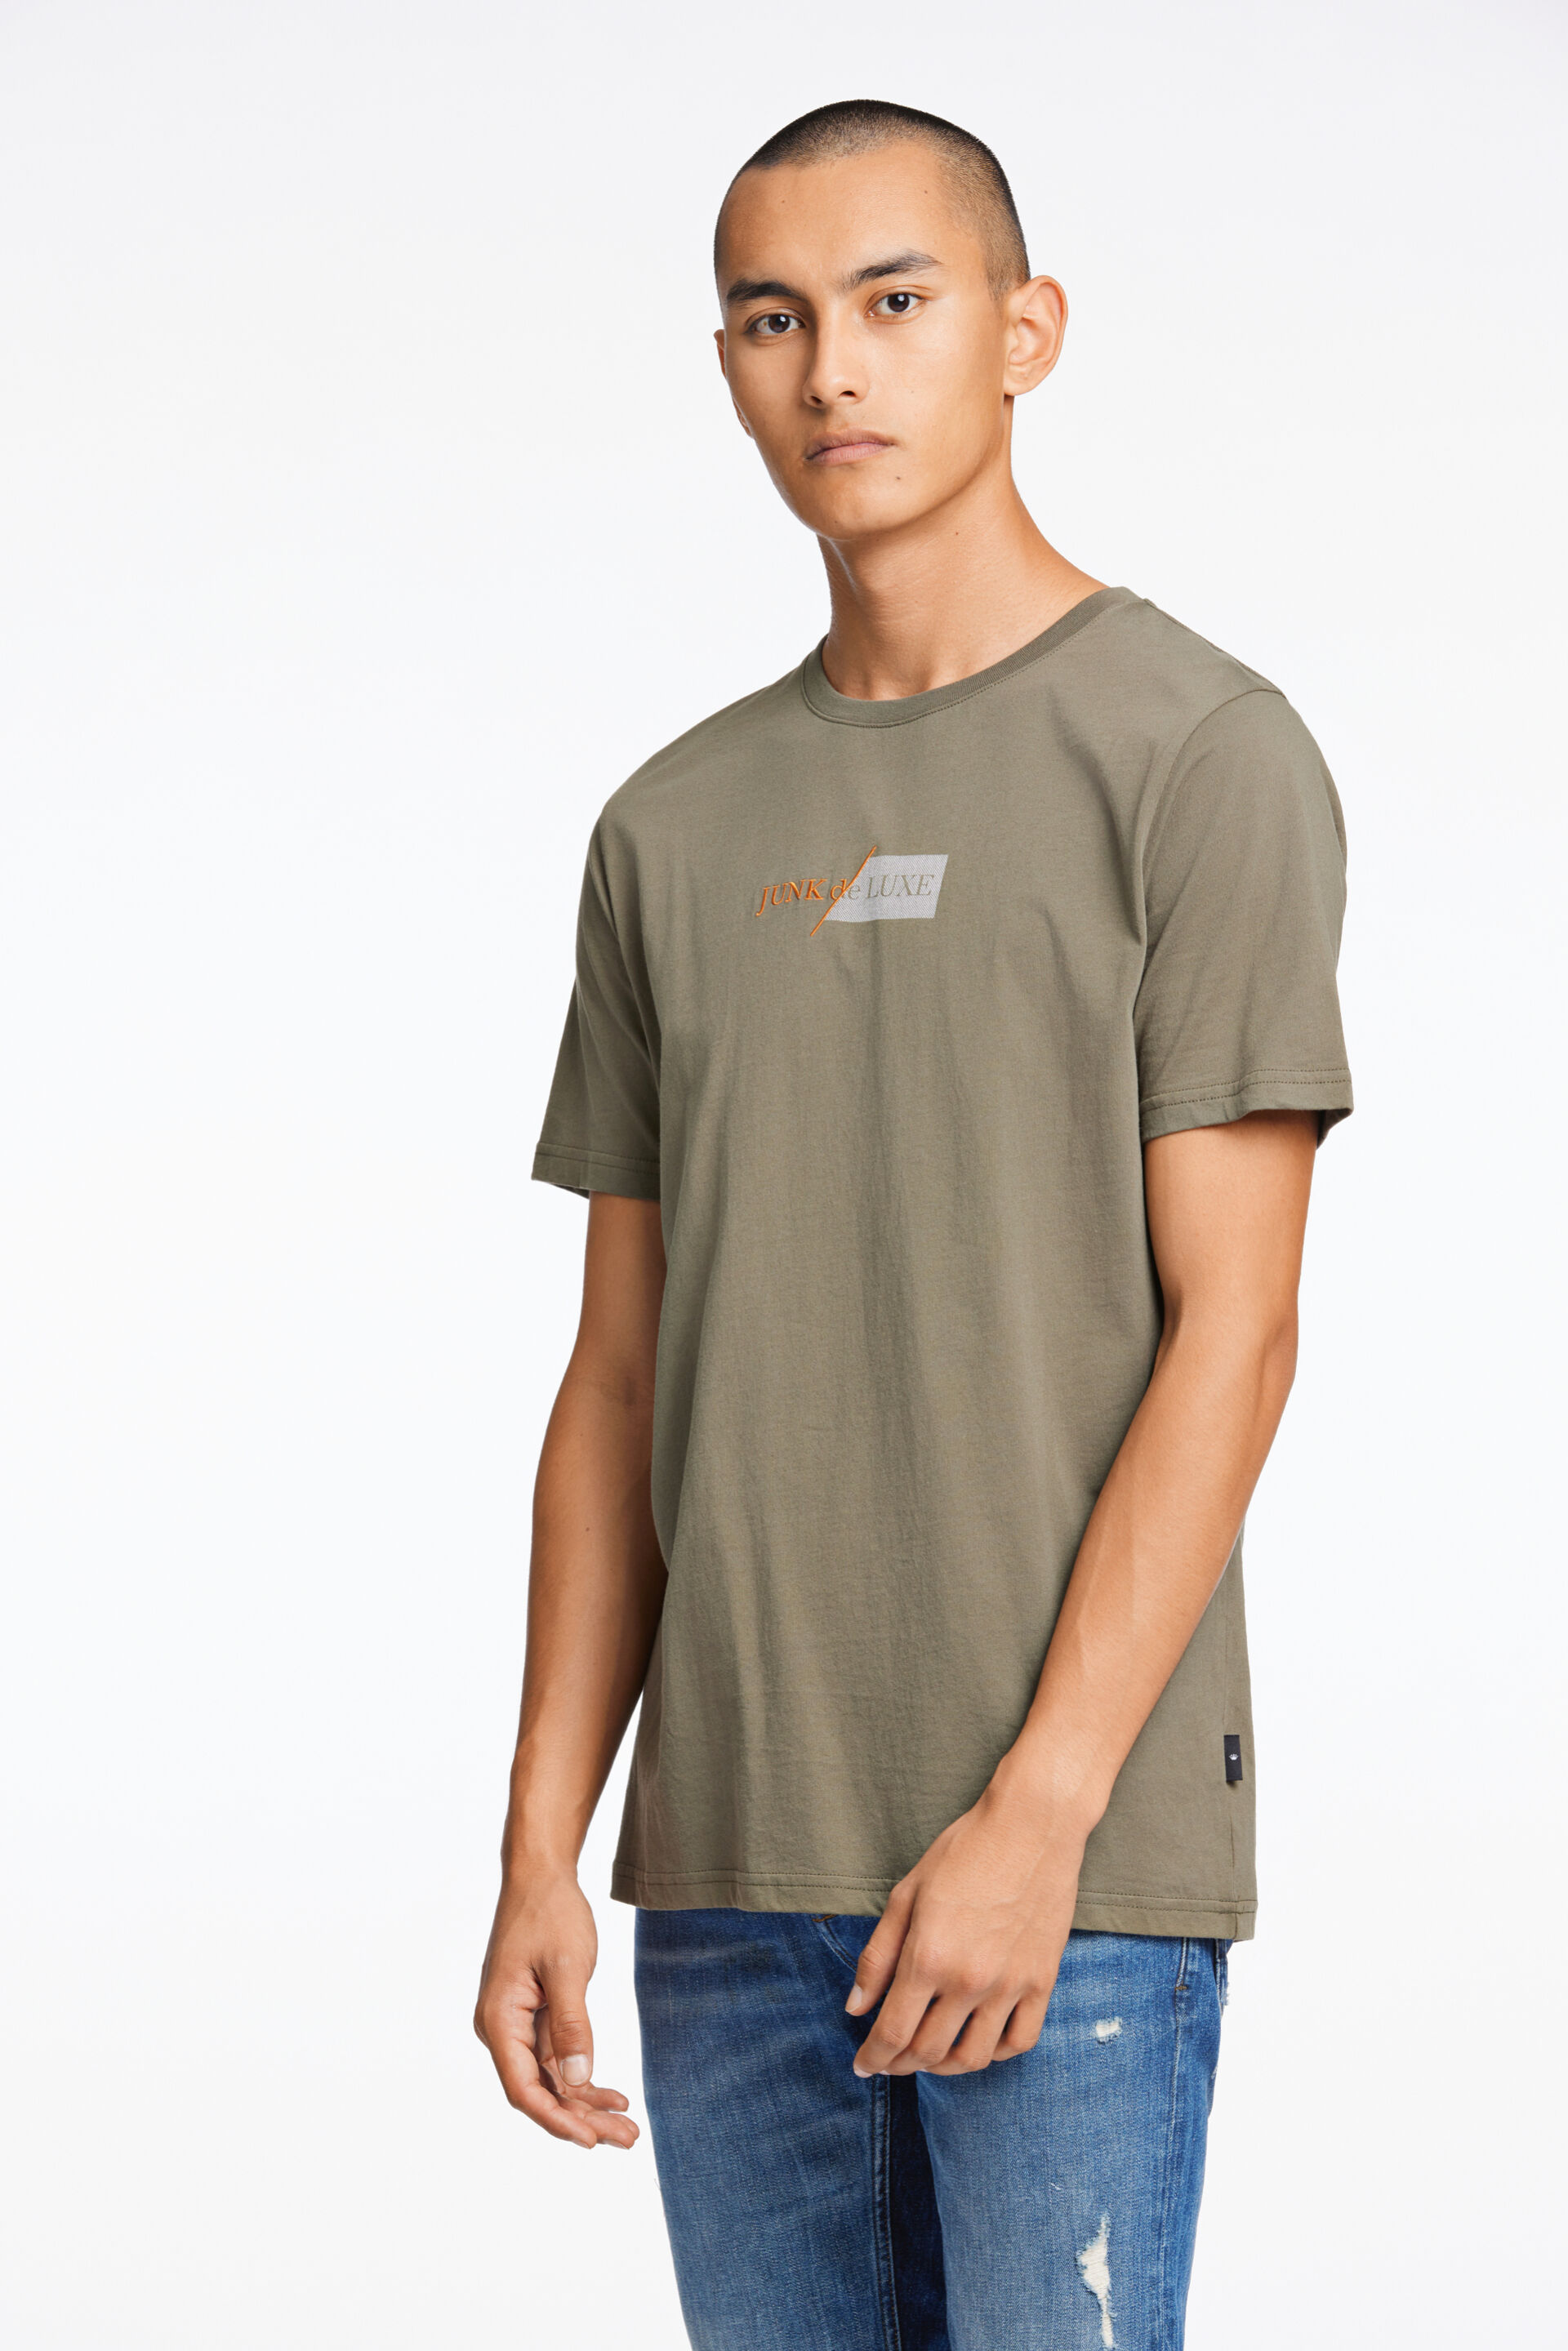 Junk de Luxe  T-shirt Grön 60-455017